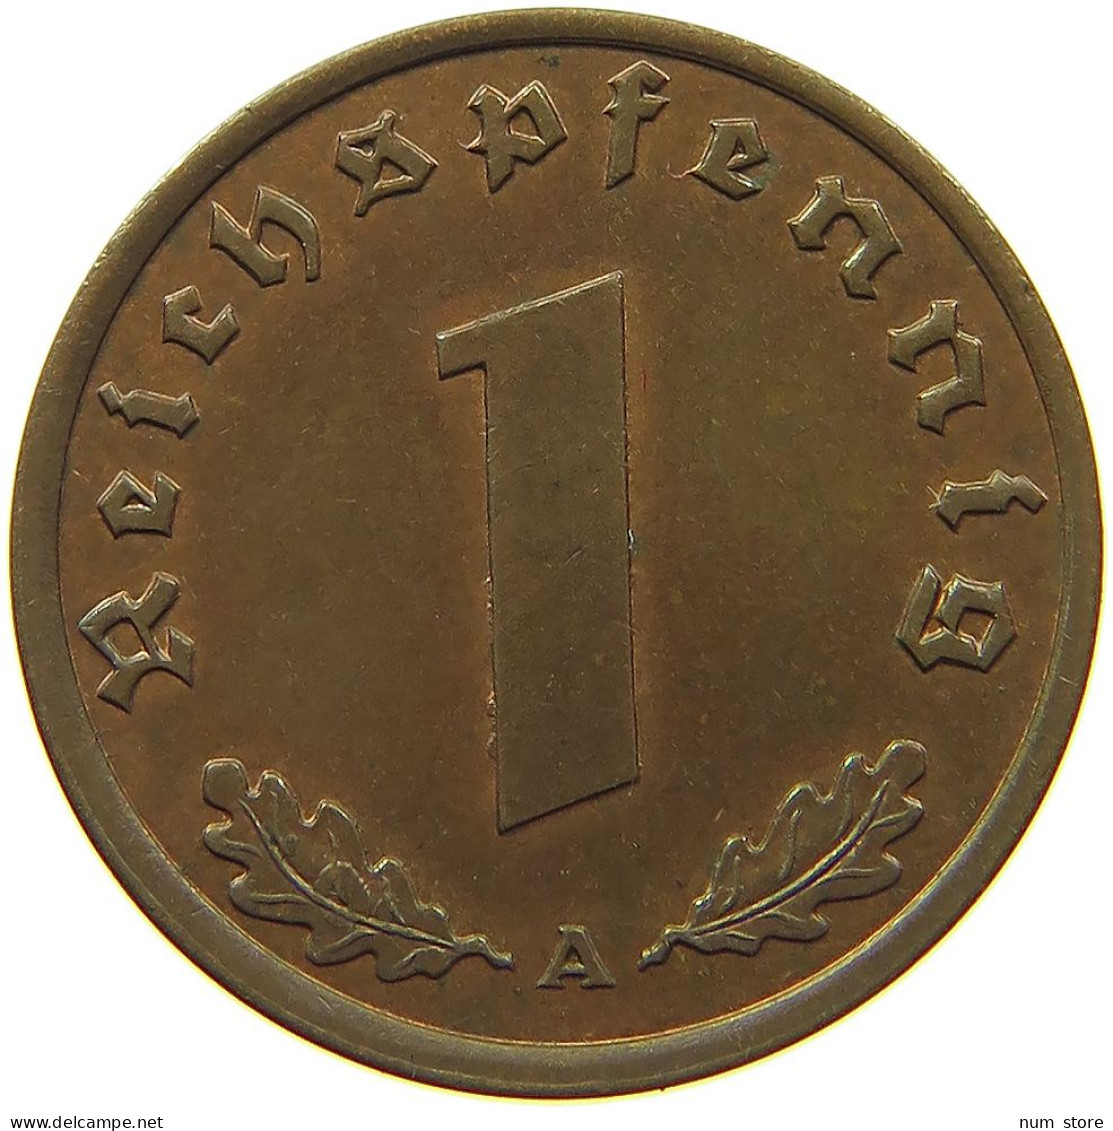 GERMANY 1 REICHSPFENNIG 1940 A #s083 0743 - 1 Reichspfennig